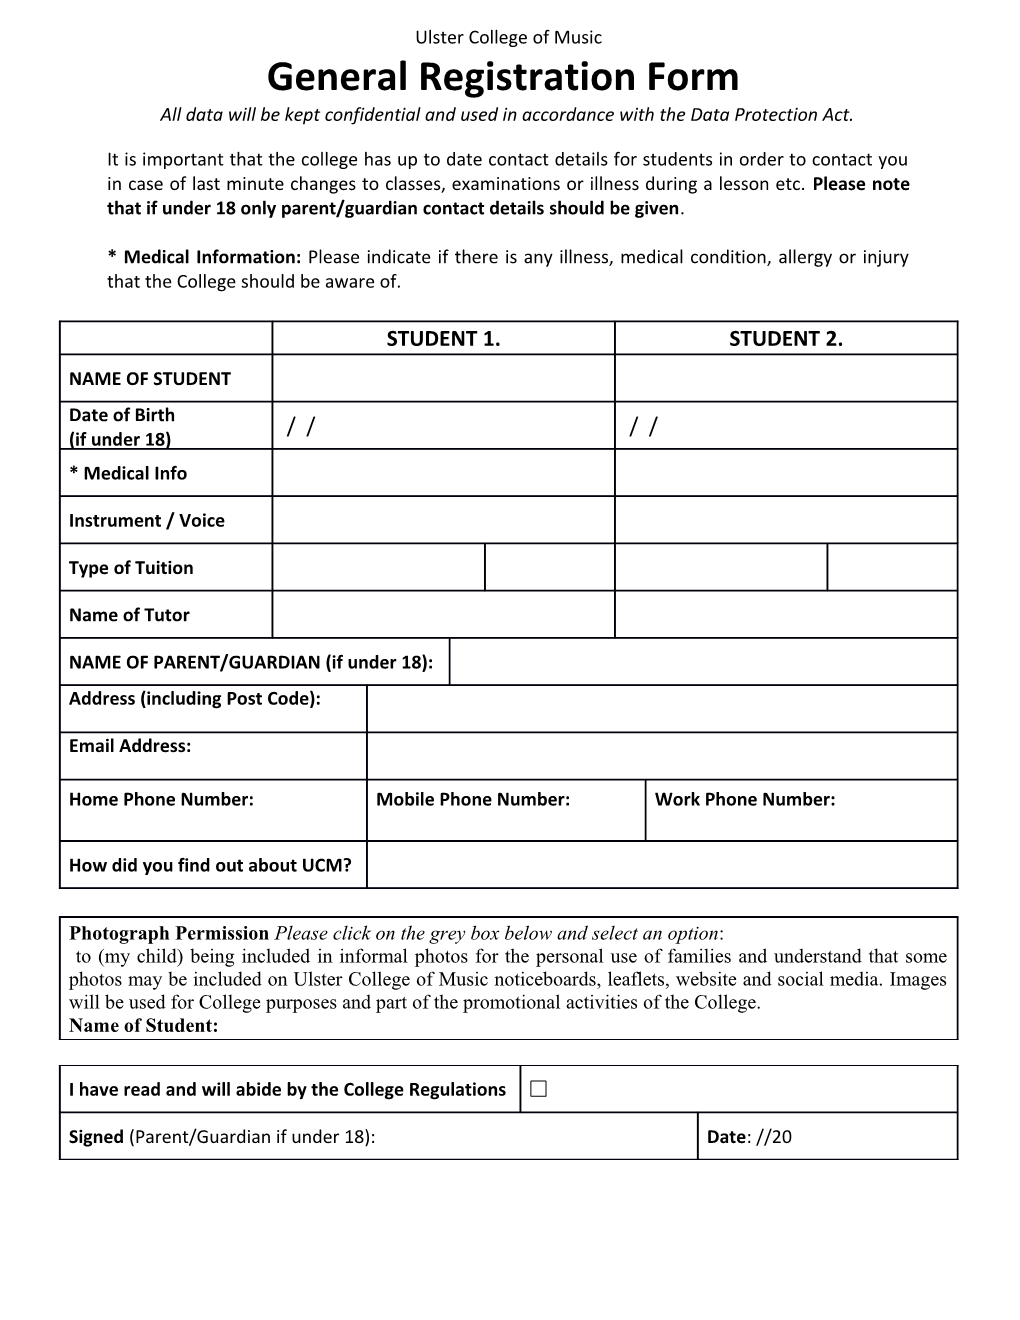 General Registration Form